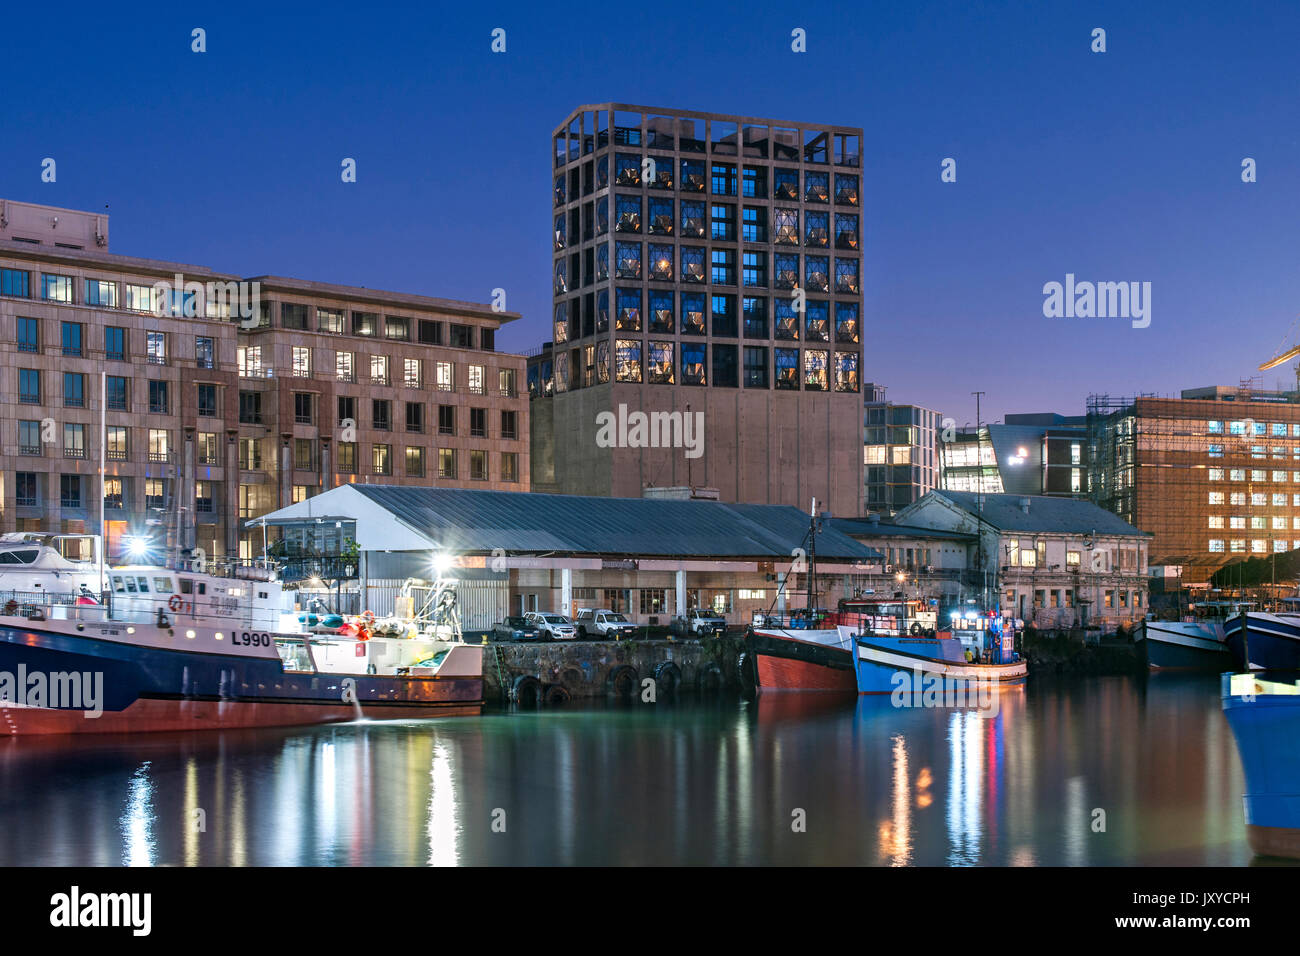 Dämmerung Blick auf den Silo Hotel und MOCAA (Museum für Zeitgenössische Kunst) Gebäude in Südafrika Kapstadt Waterfront. Stockfoto